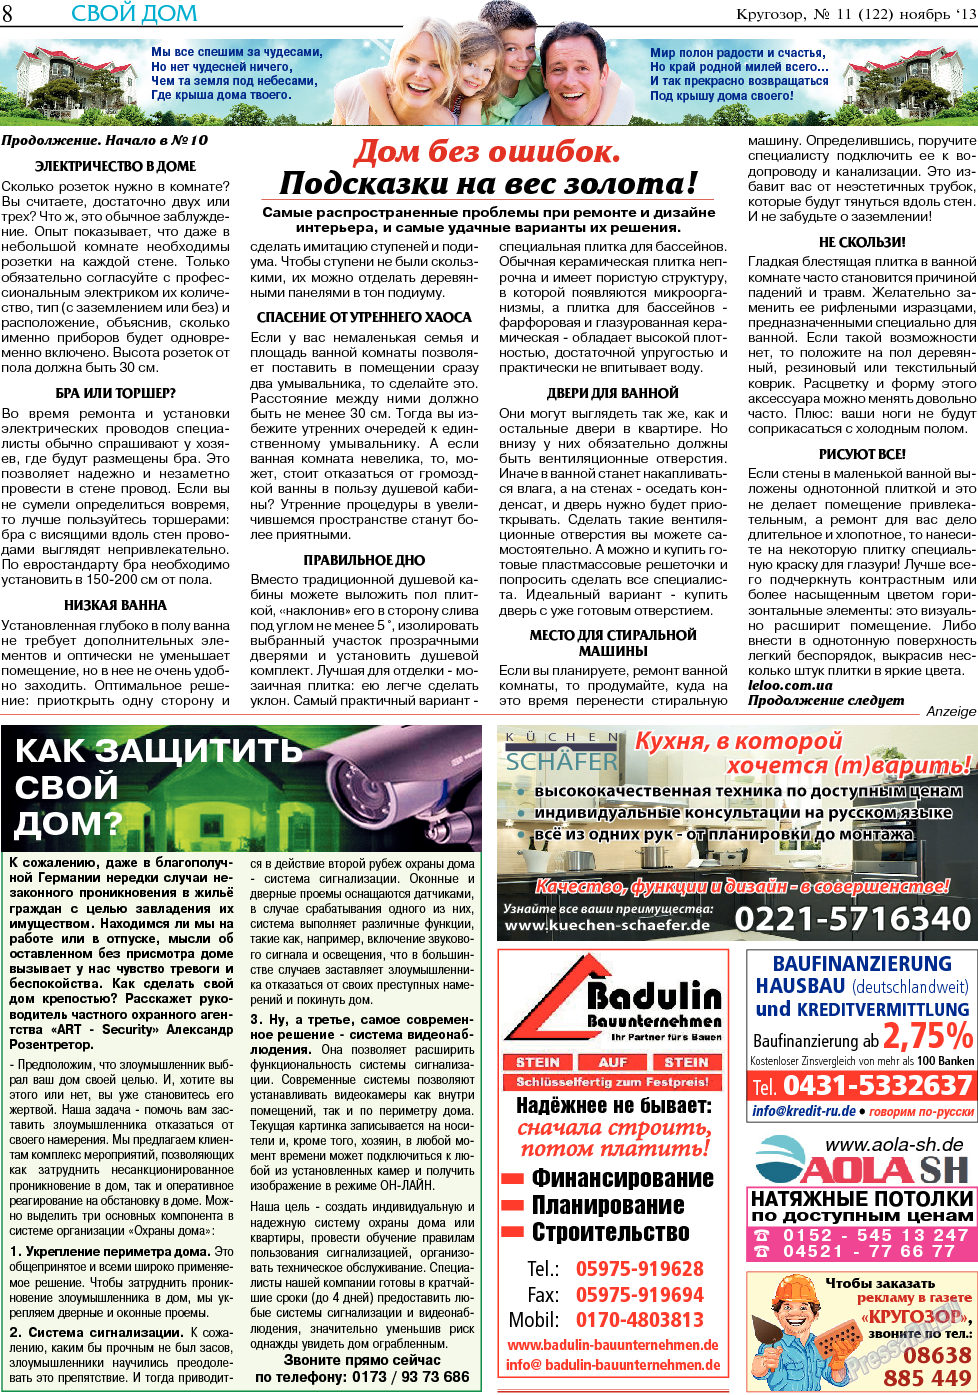 Кругозор (газета). 2013 год, номер 11, стр. 8